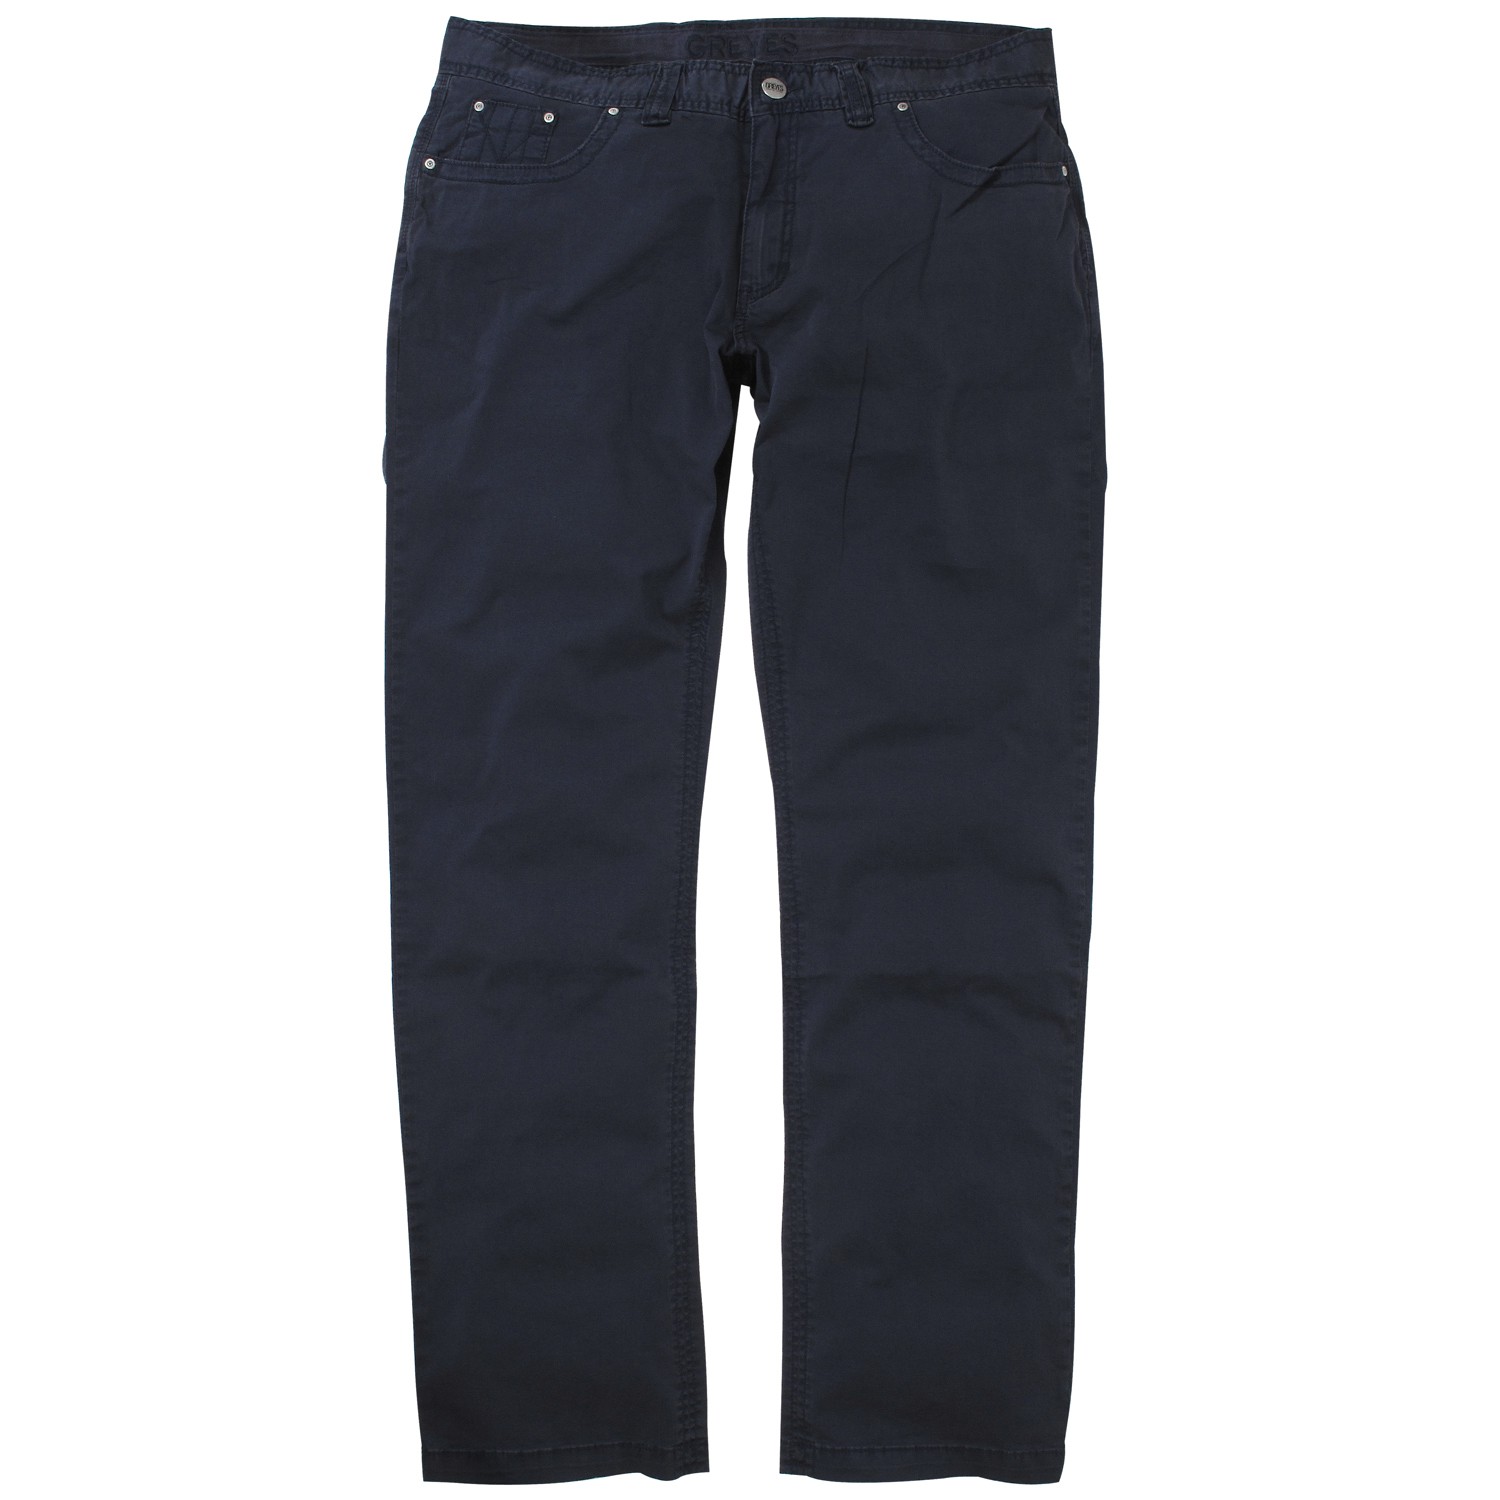 Dunkelblaue Jeans - Greyes - in großen Größen bis 52